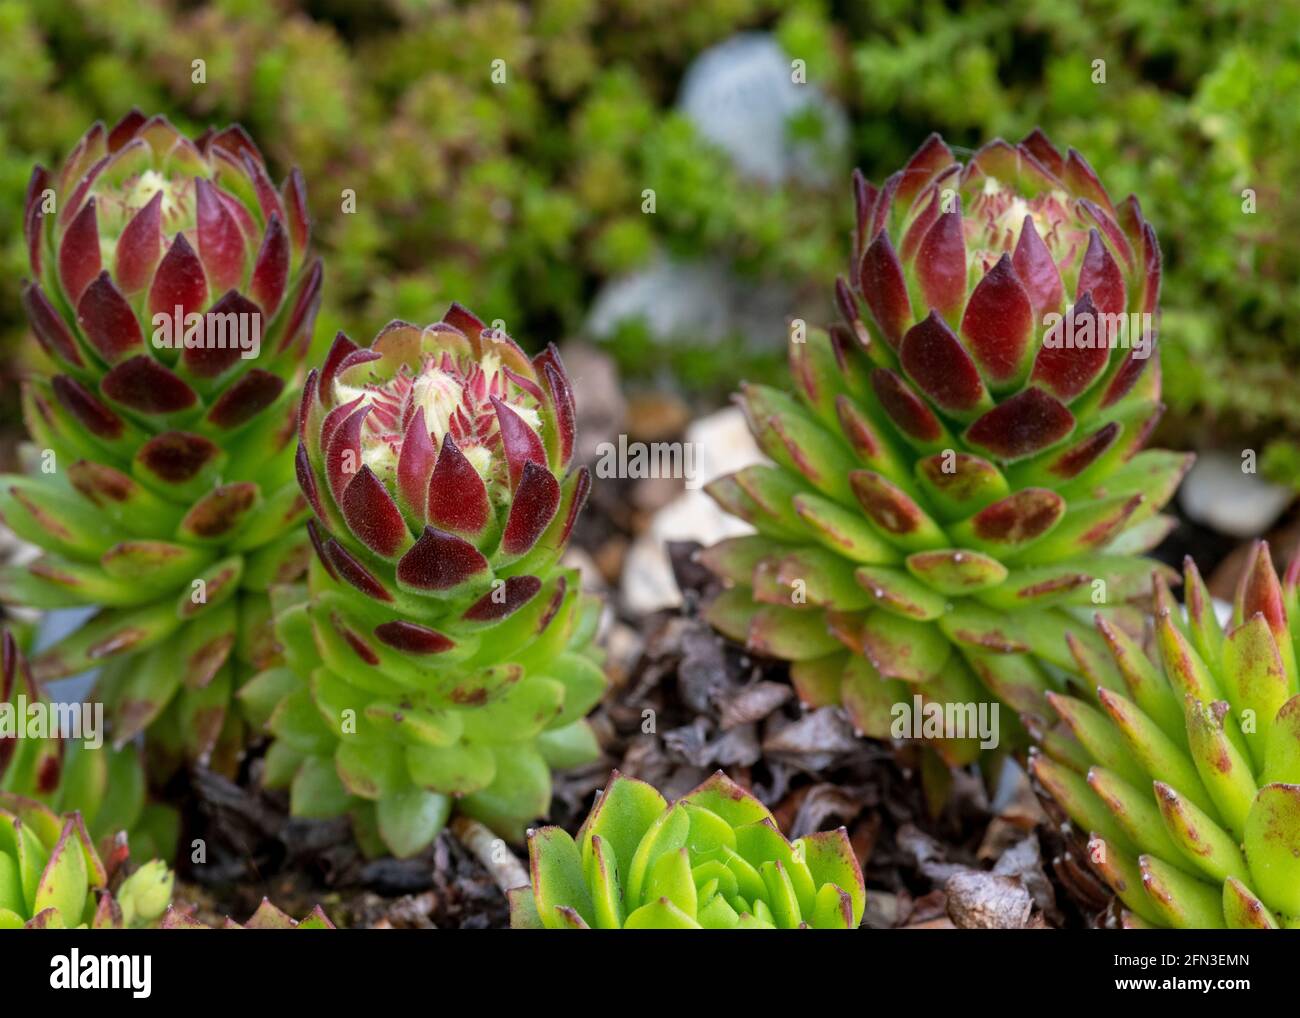 Rot und grün saftige alpine Pflanze sempervivum in einem Garten Steingarten , marco schoss Fokus auf den Untergrund verschwommen Hintergrund zu helfen, Kopie Raum Stockfoto